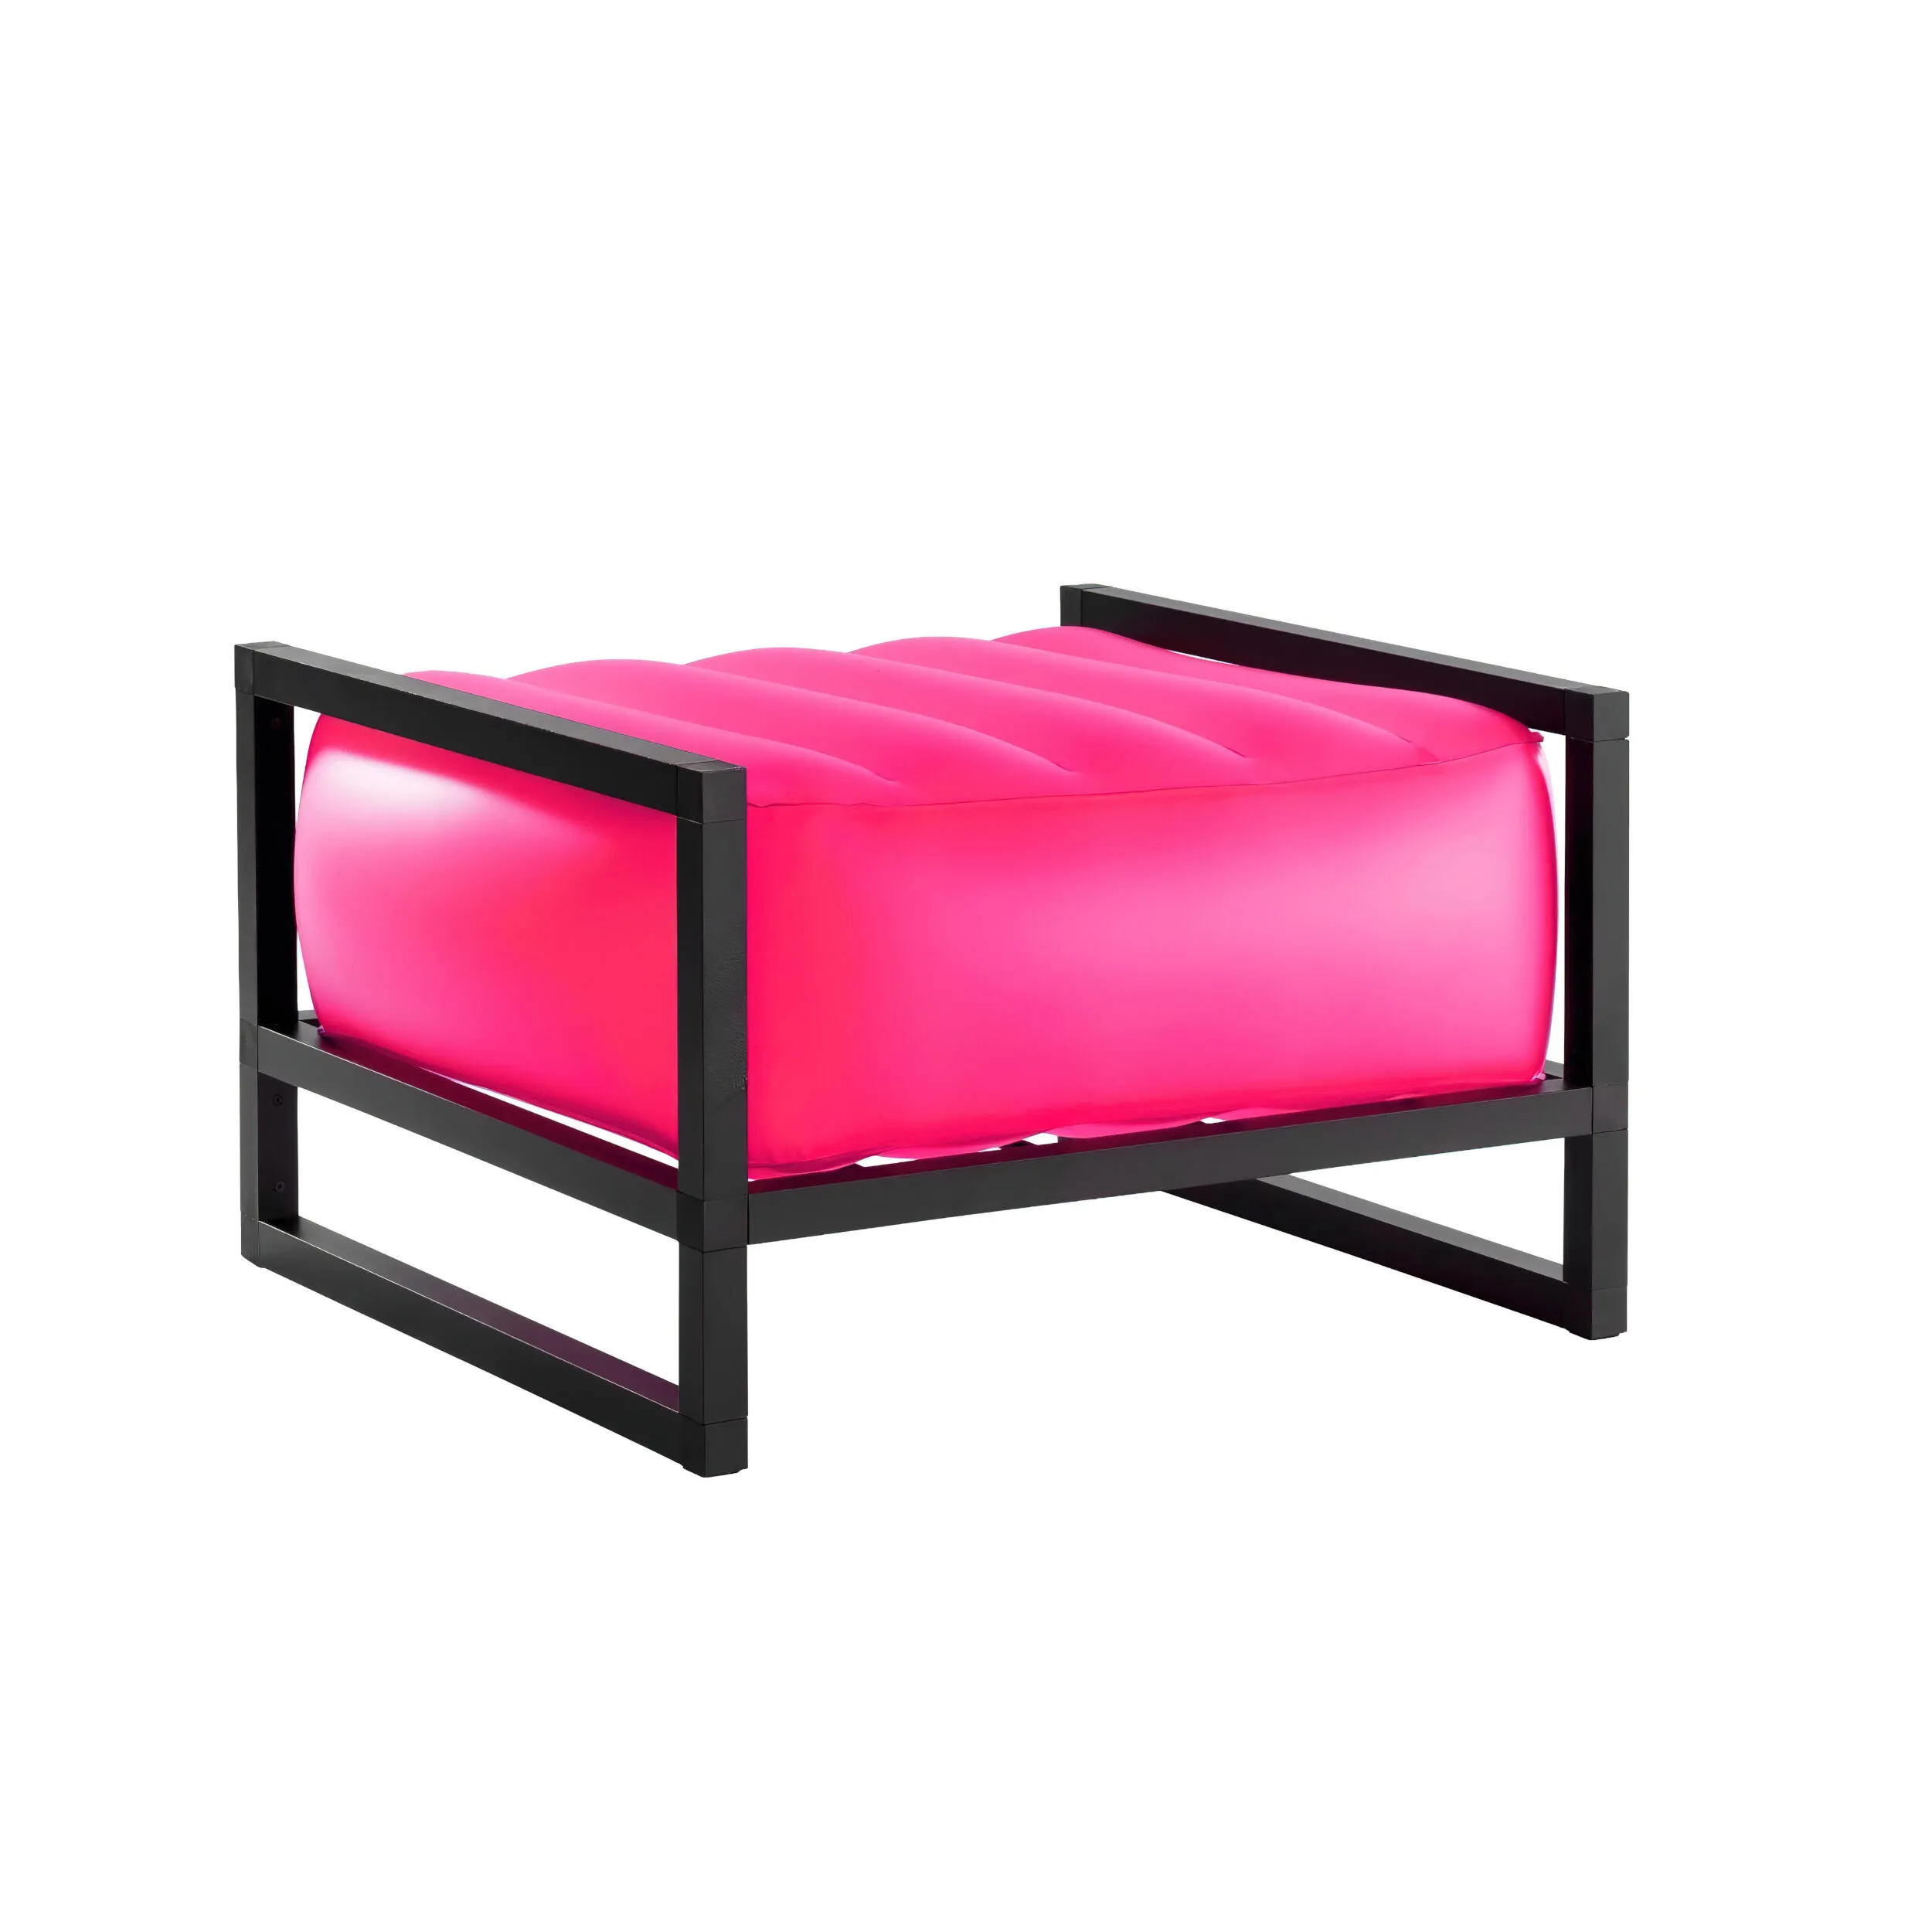 pouf Yomi eko illuminato struttura in alluminio, dimensioni 62x70xH40 cm peso 7,1 kg, seduta gonfiabile in TPU colore rosa traslucido